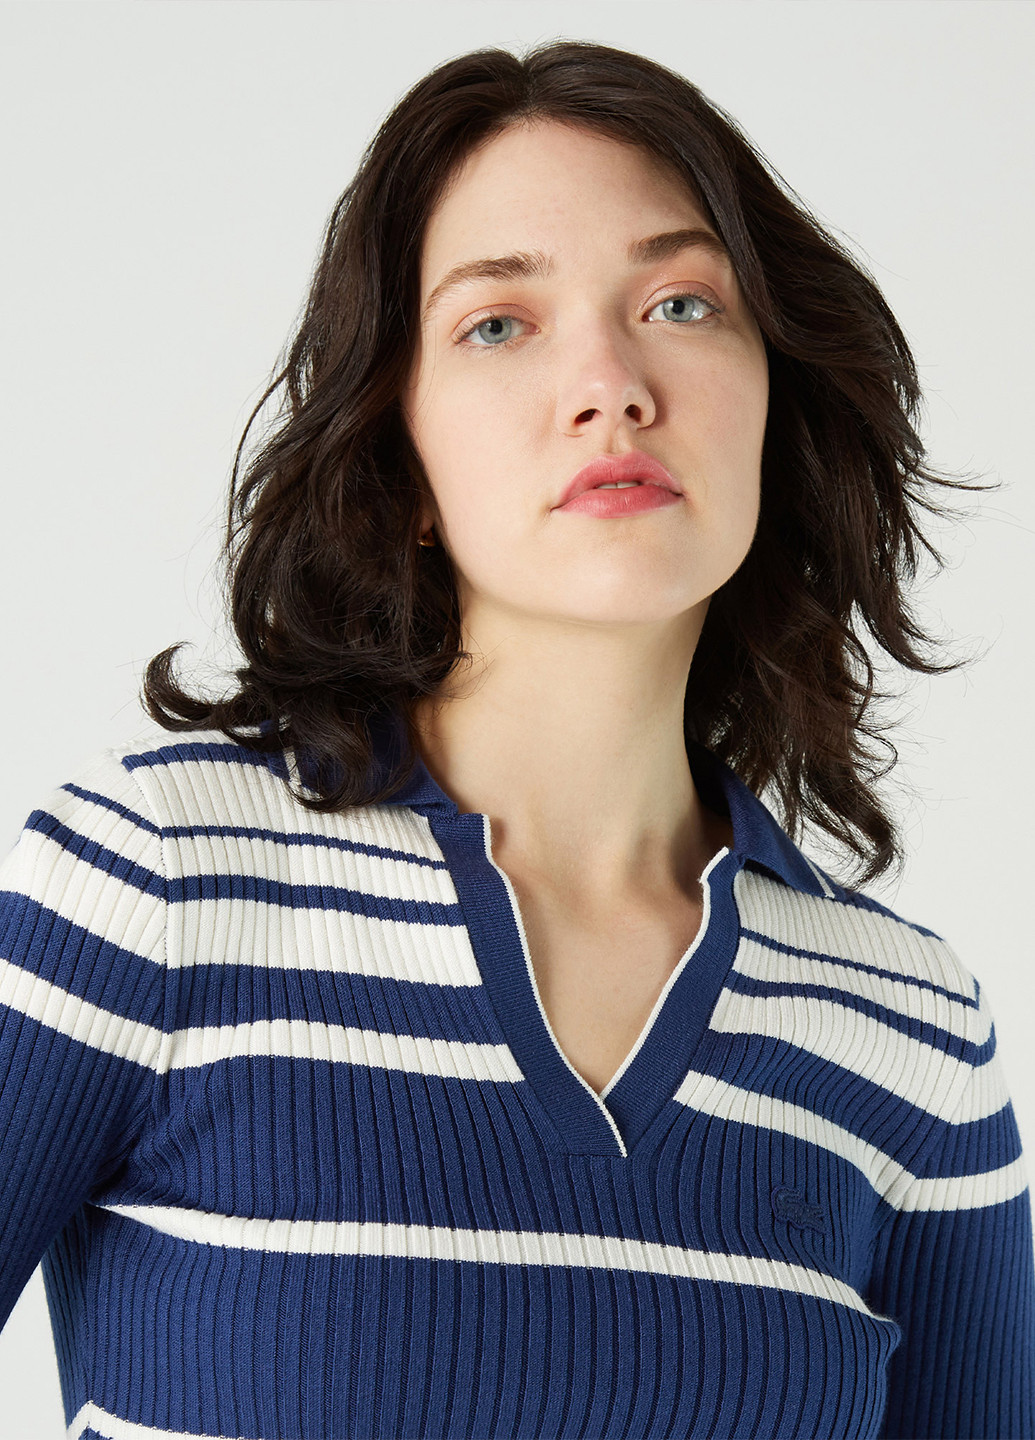 Комбинированный демисезонный пуловер пуловер Lacoste